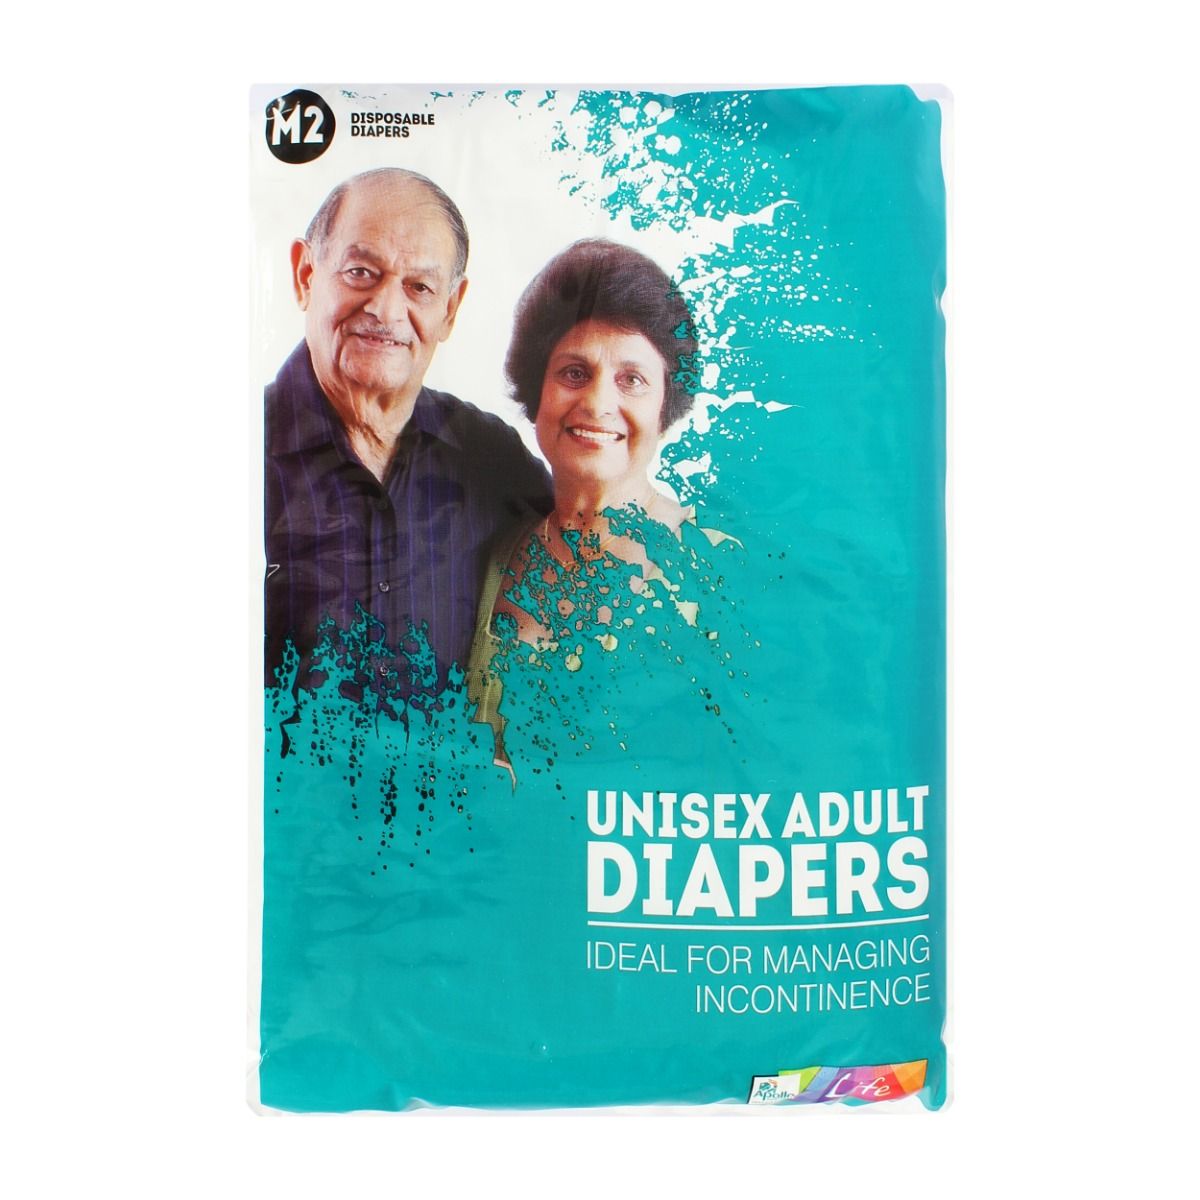 Apollo Life Unisex Adult Diapers Medium, 2 Count, Pack of 1 